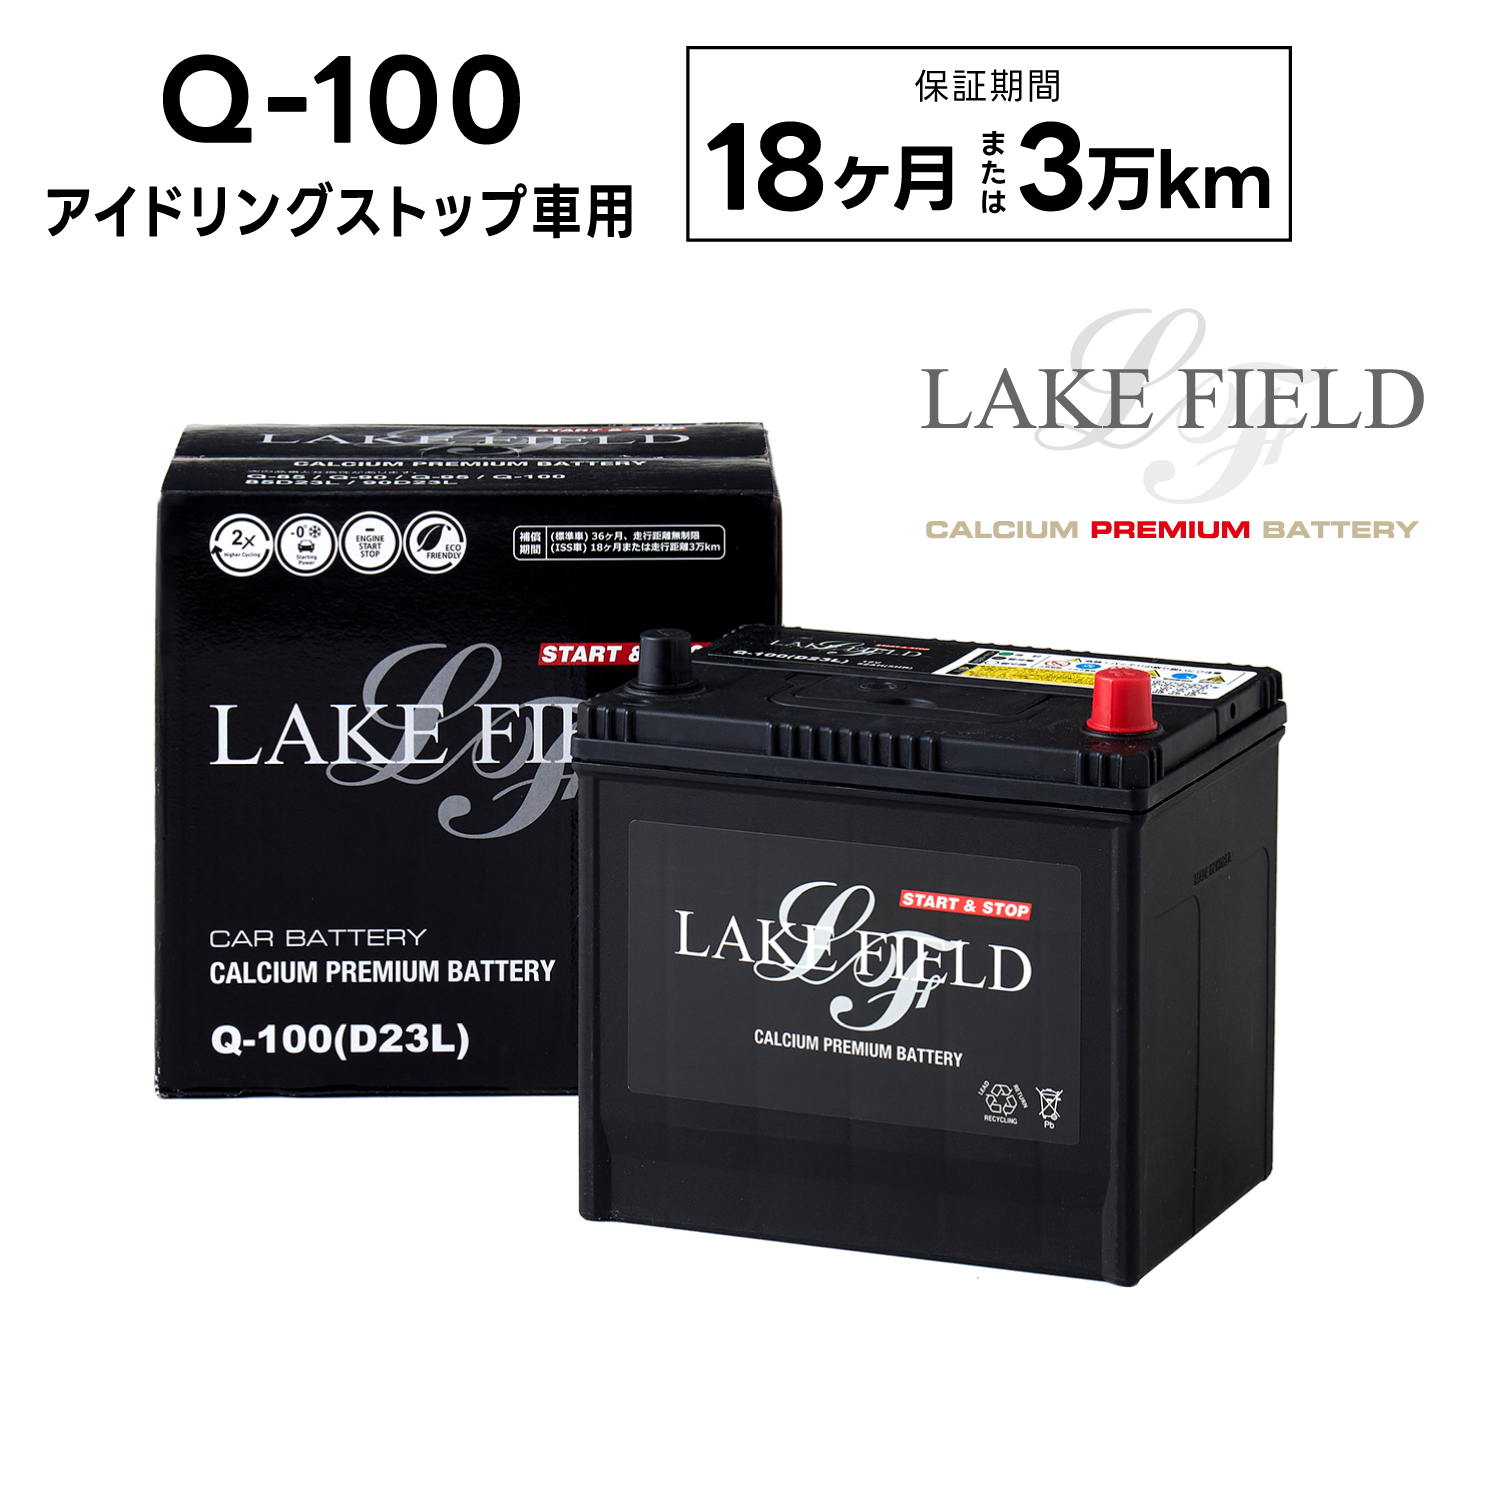 【代引き不可】LF-Q100L アイドリングストップ車用バッテリー 18ヶ月3万km補償【互換  Q-90  D23L】LAKE FIELD（レイクフィールド）